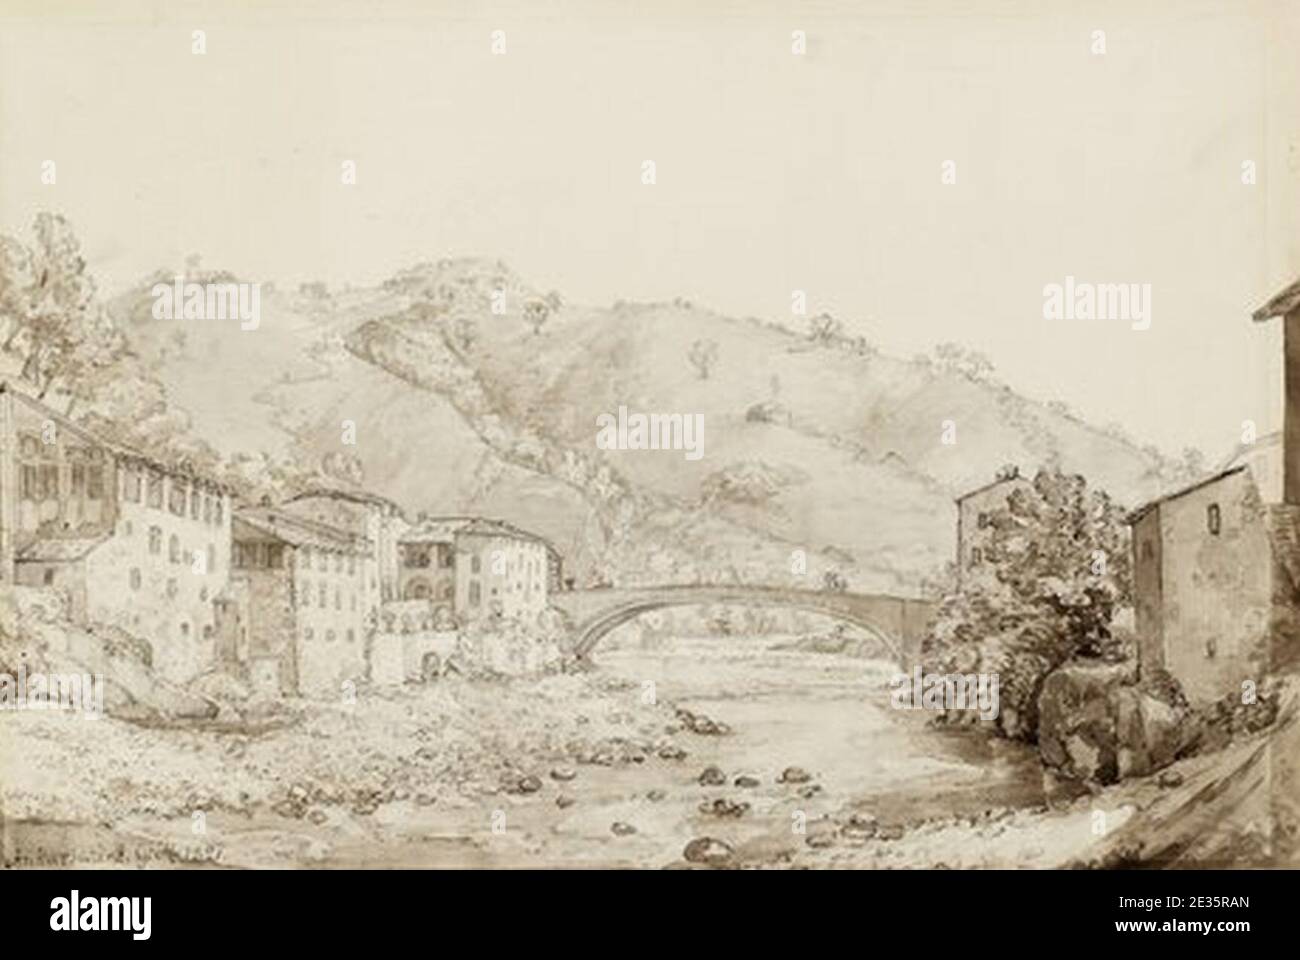 M. G. Anckarsvärd, Vy över italiensk stad, tuschlavering 1821. Foto Stock